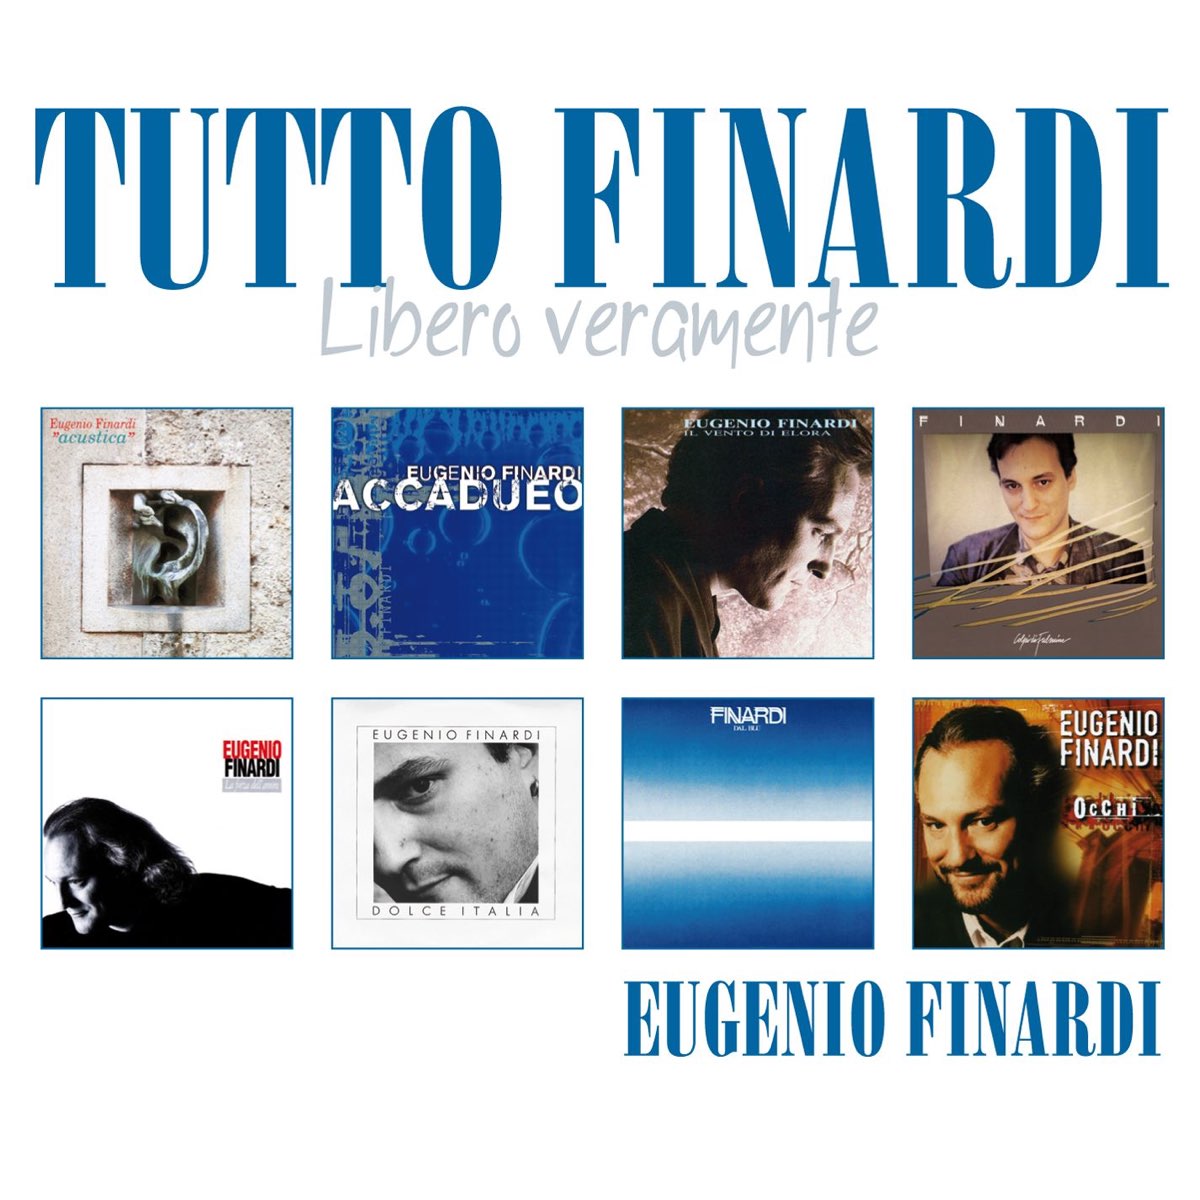 Tutto Finardi "Libero veramente" by Eugenio Finardi on Apple Music